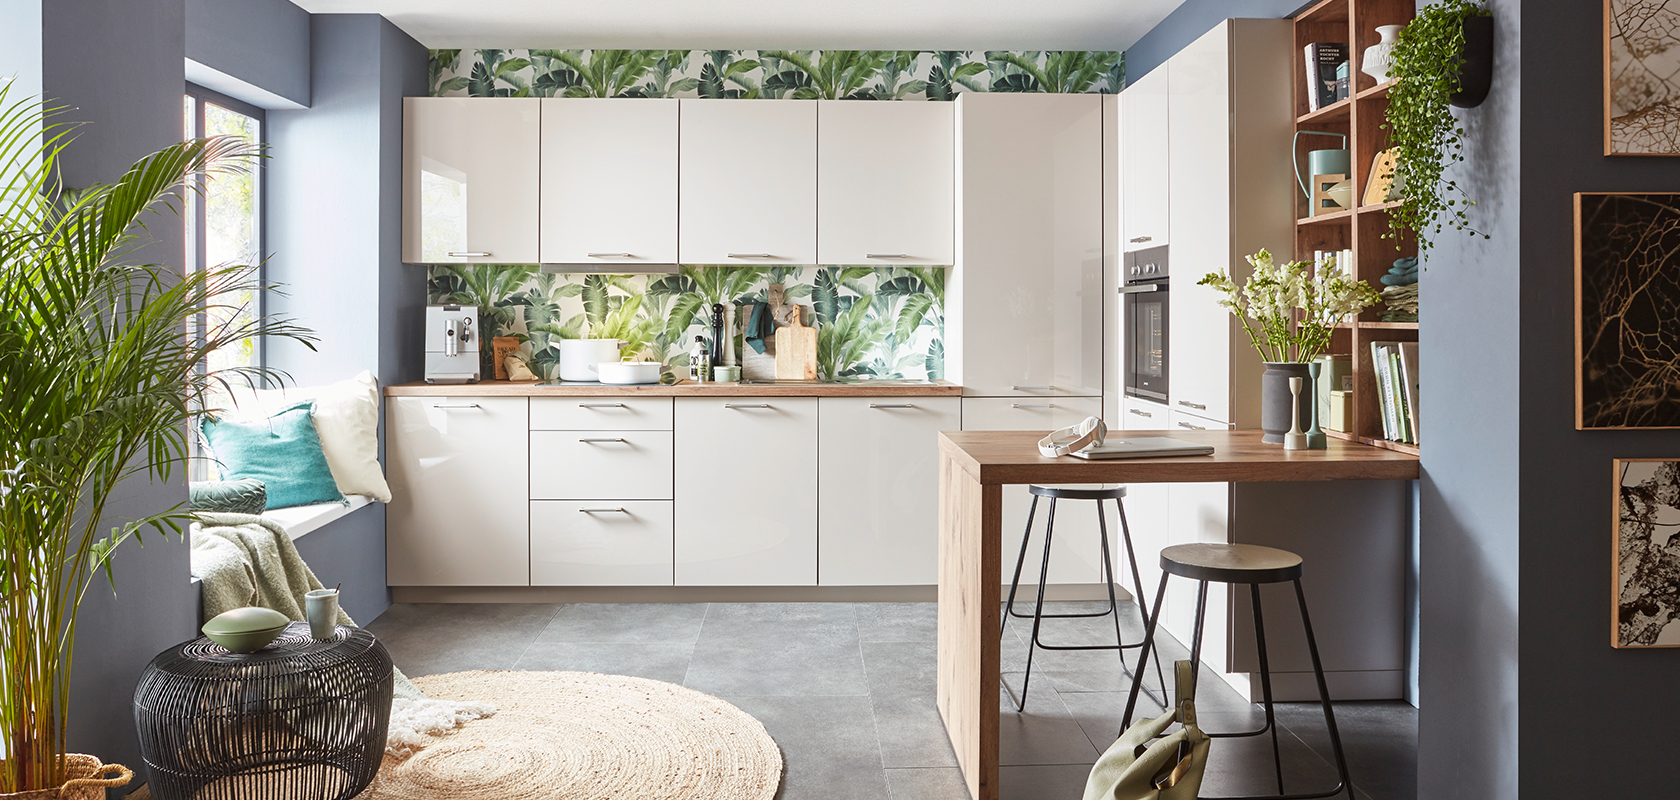 Moderní kuchyňský interiér s bílými skříňkami, tropickým tapetou, dřevěnou pracovní deskou, stylovými barovými židlemi a zelenými rostlinnými akcenty vytvářející útulný, moderní prostor.